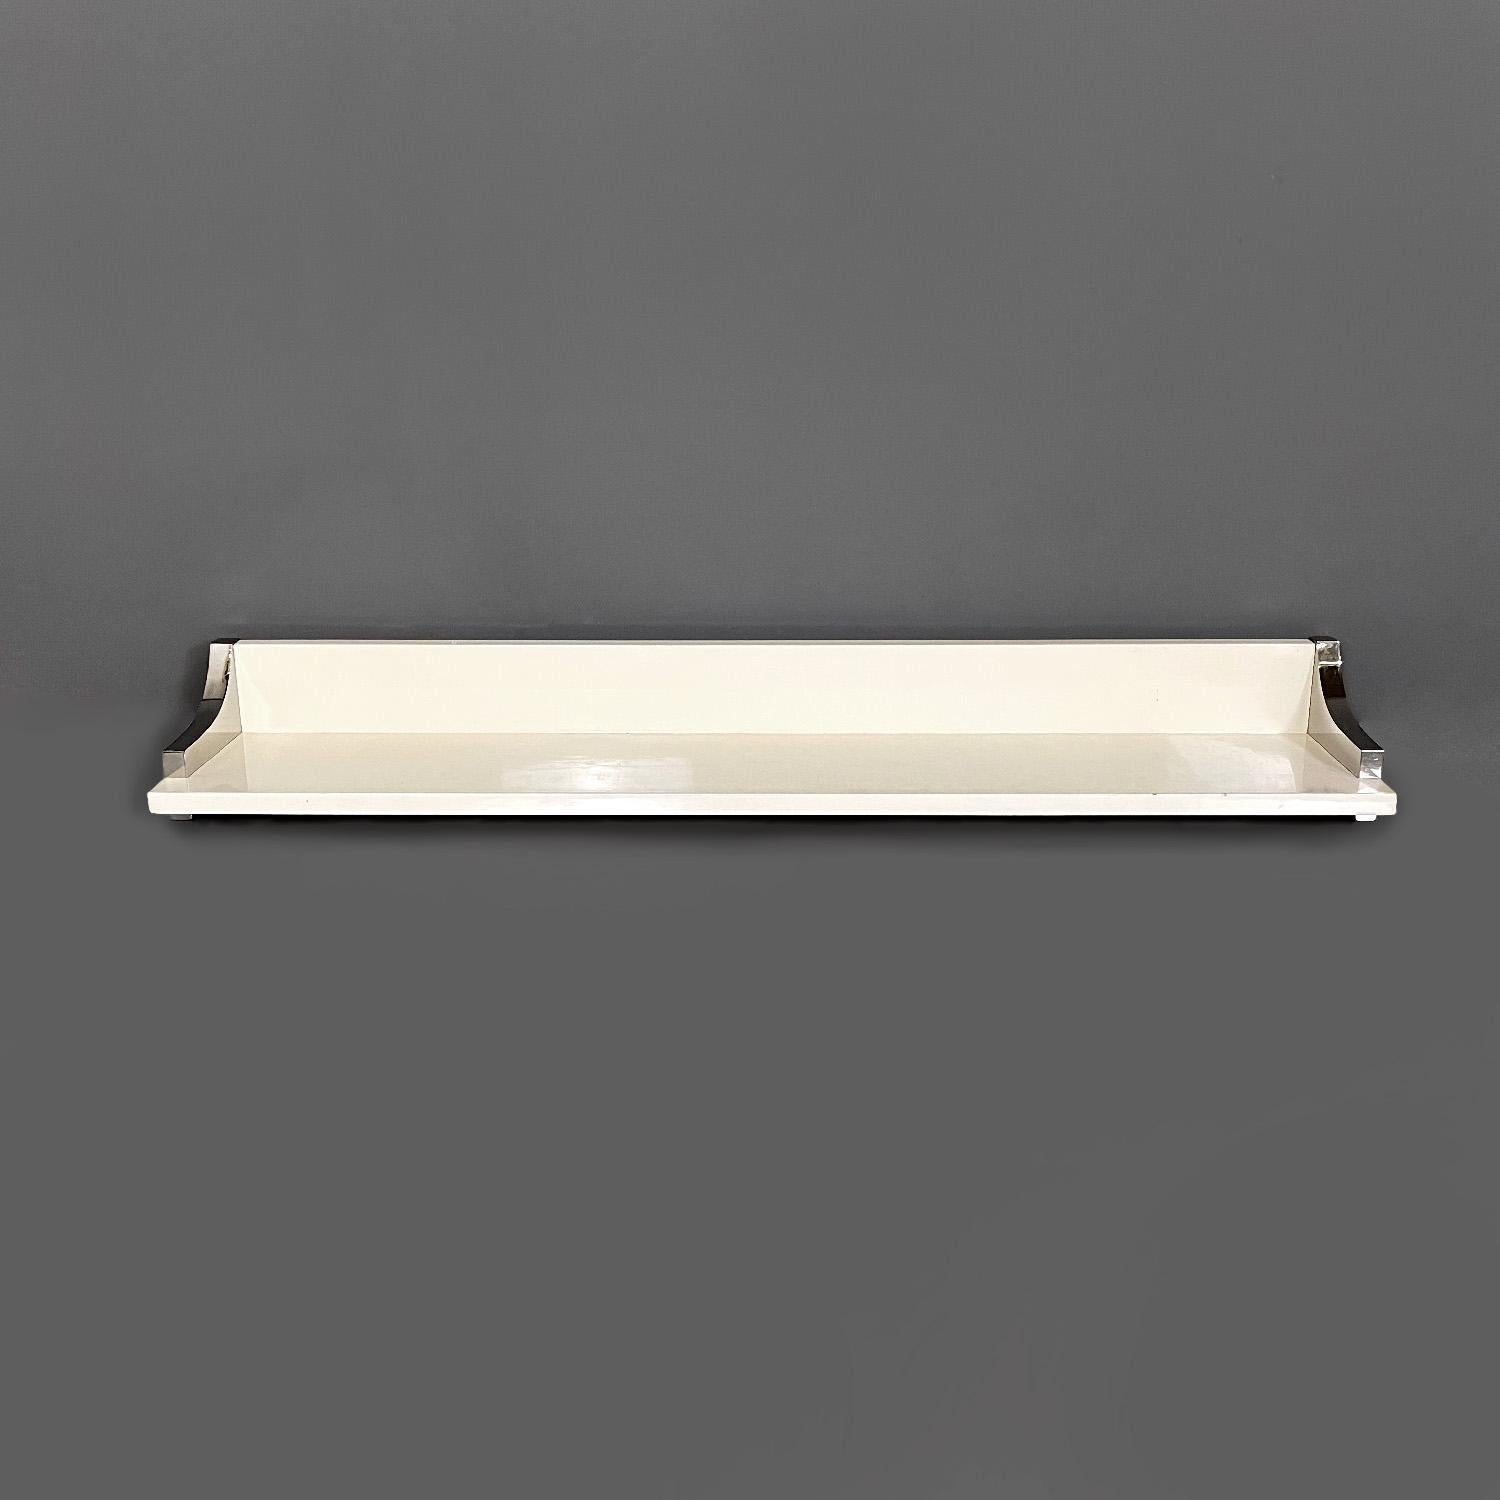 Modernes italienisches Regal aus weiß lackiertem Holz und verchromtem Metall von D.I.D., 1980er Jahre
Rechteckiges Regal mit einer Struktur aus weiß lackiertem Holz mit einer glänzenden Oberfläche. An beiden Seiten befindet sich eine dekorative